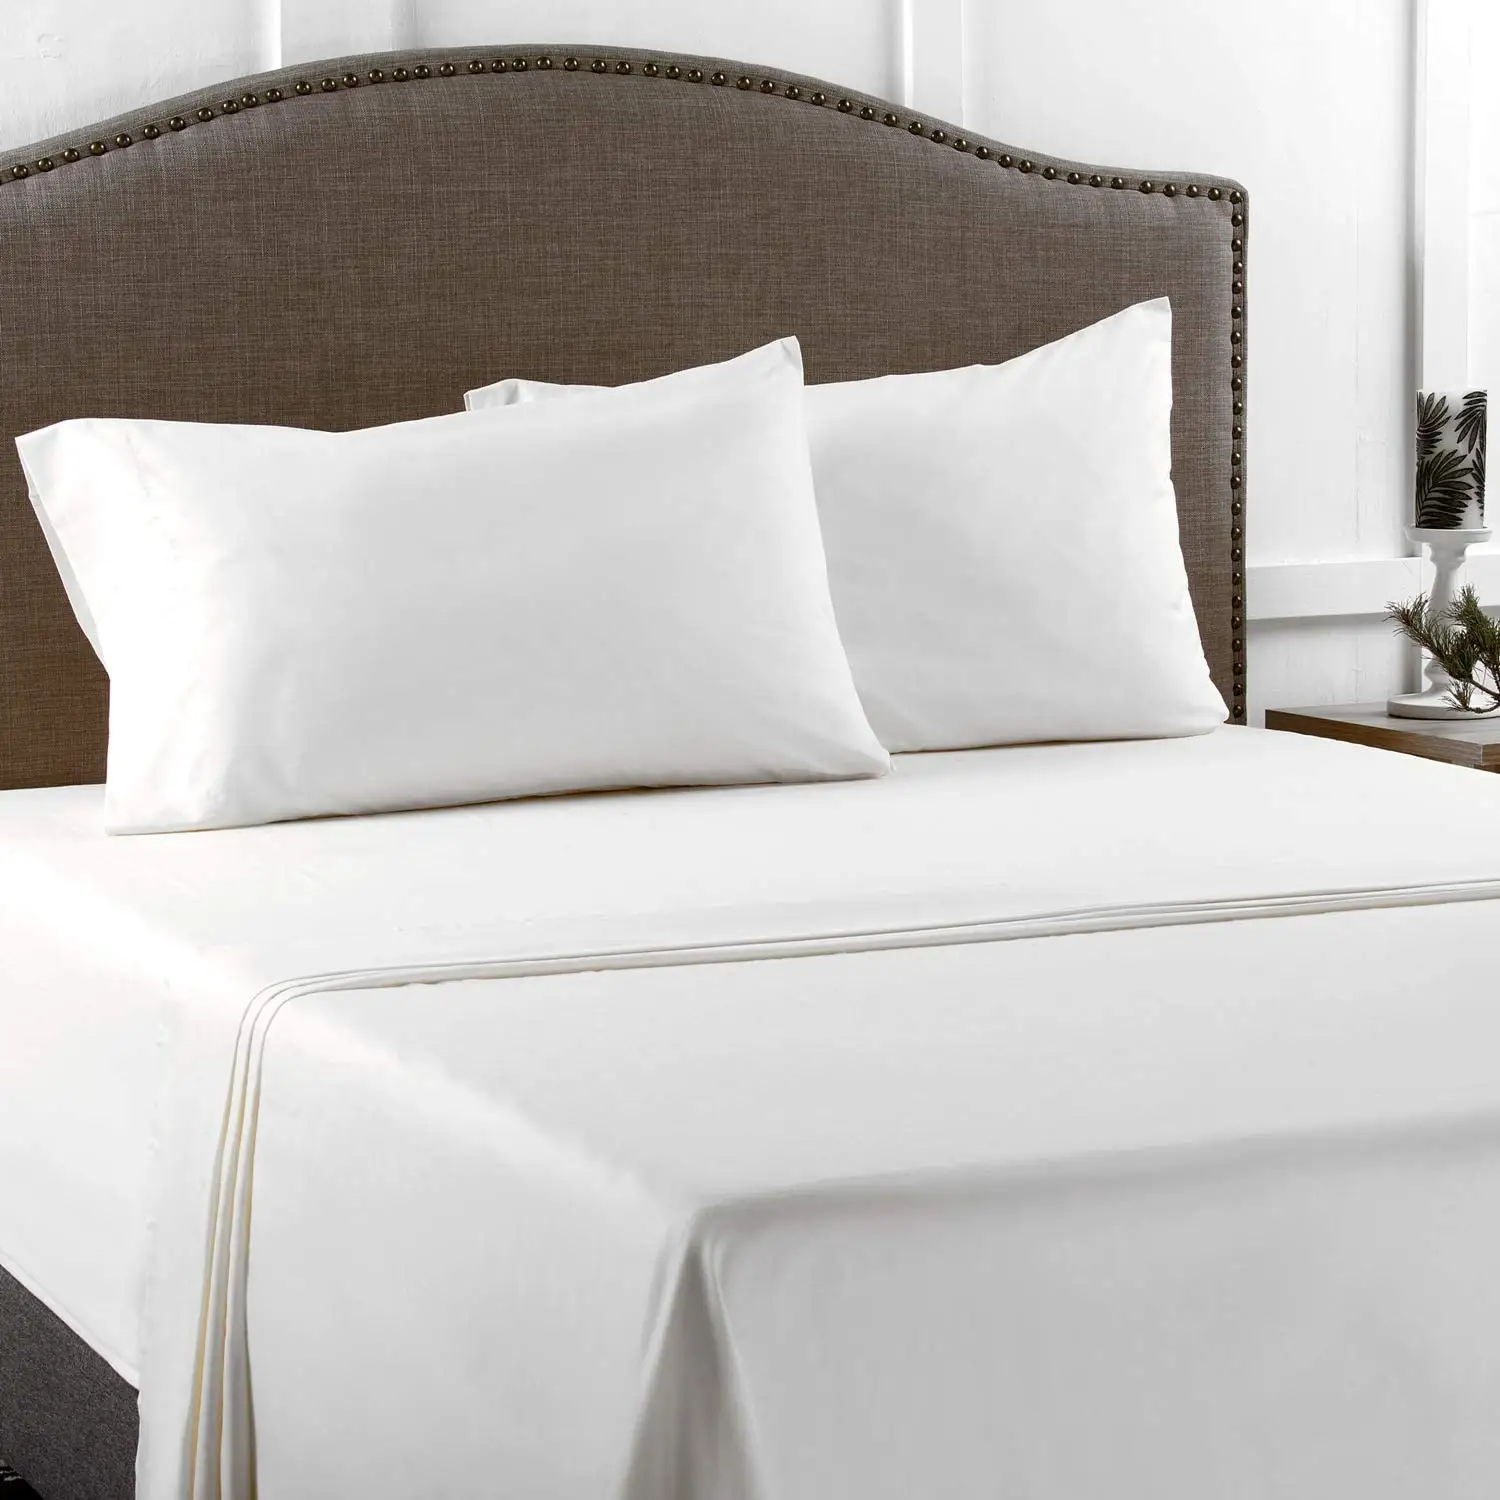 ベッドシーツ寝具セットベッドルーム用純白快適コットンキングサイズ6ピース